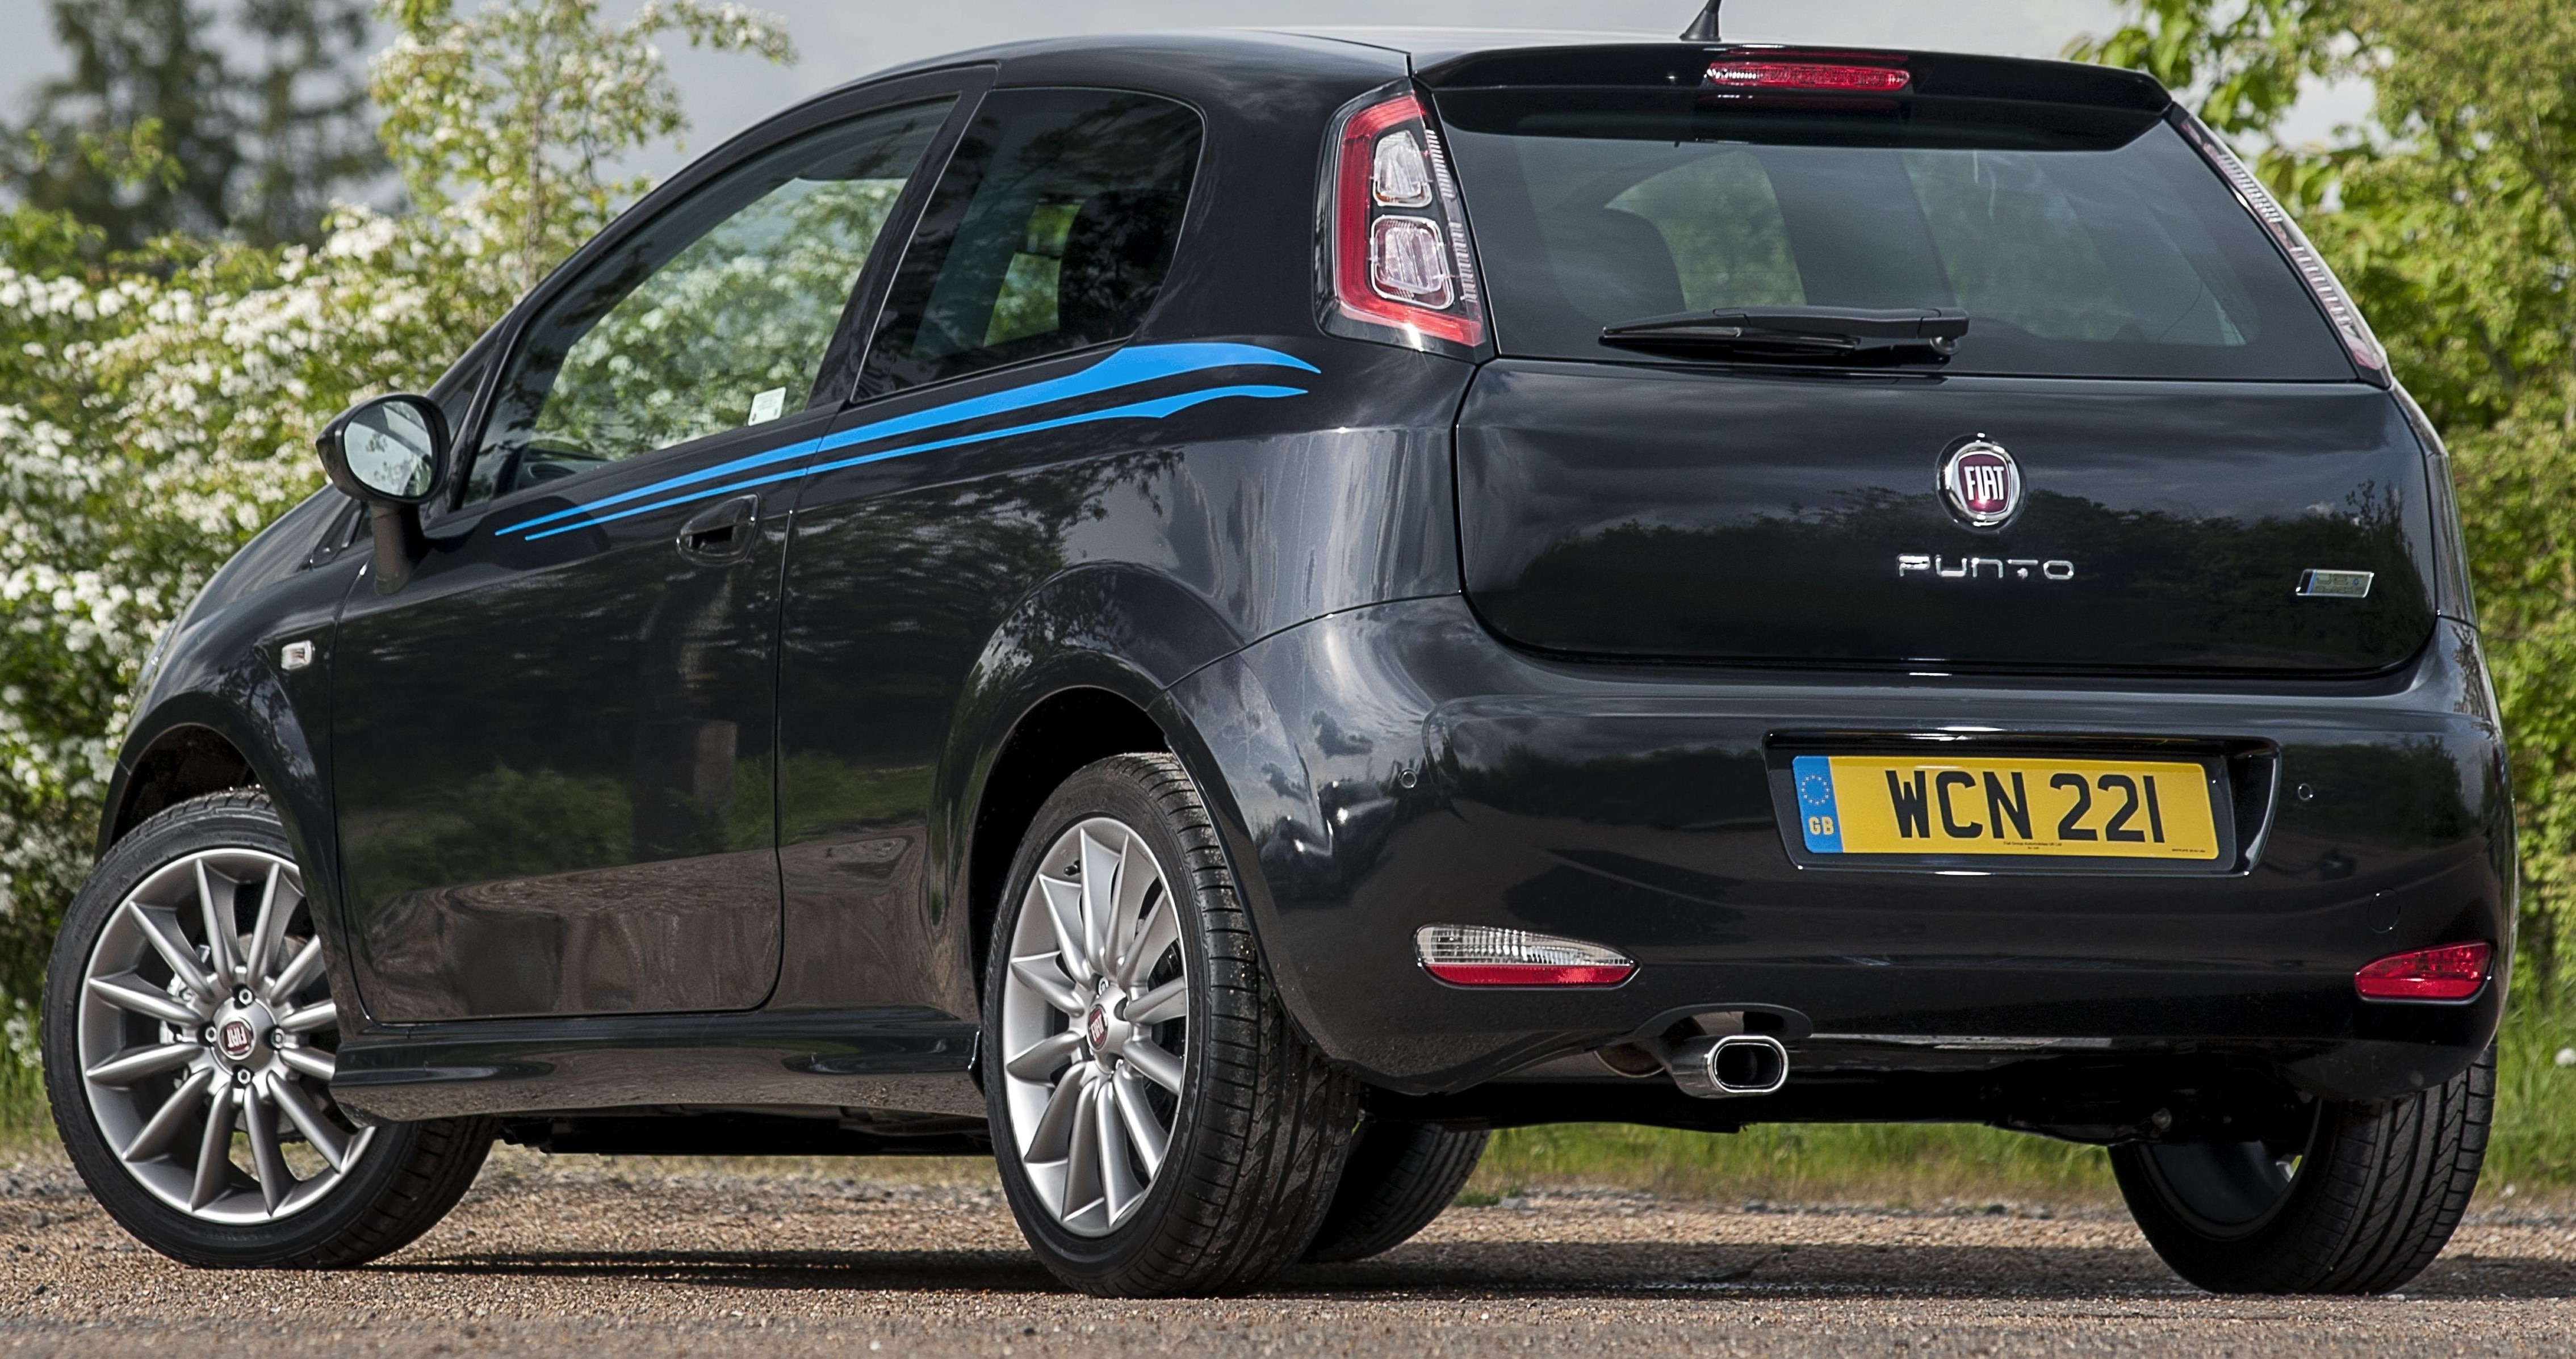 Fiat Punto Review | Motors.co.uk